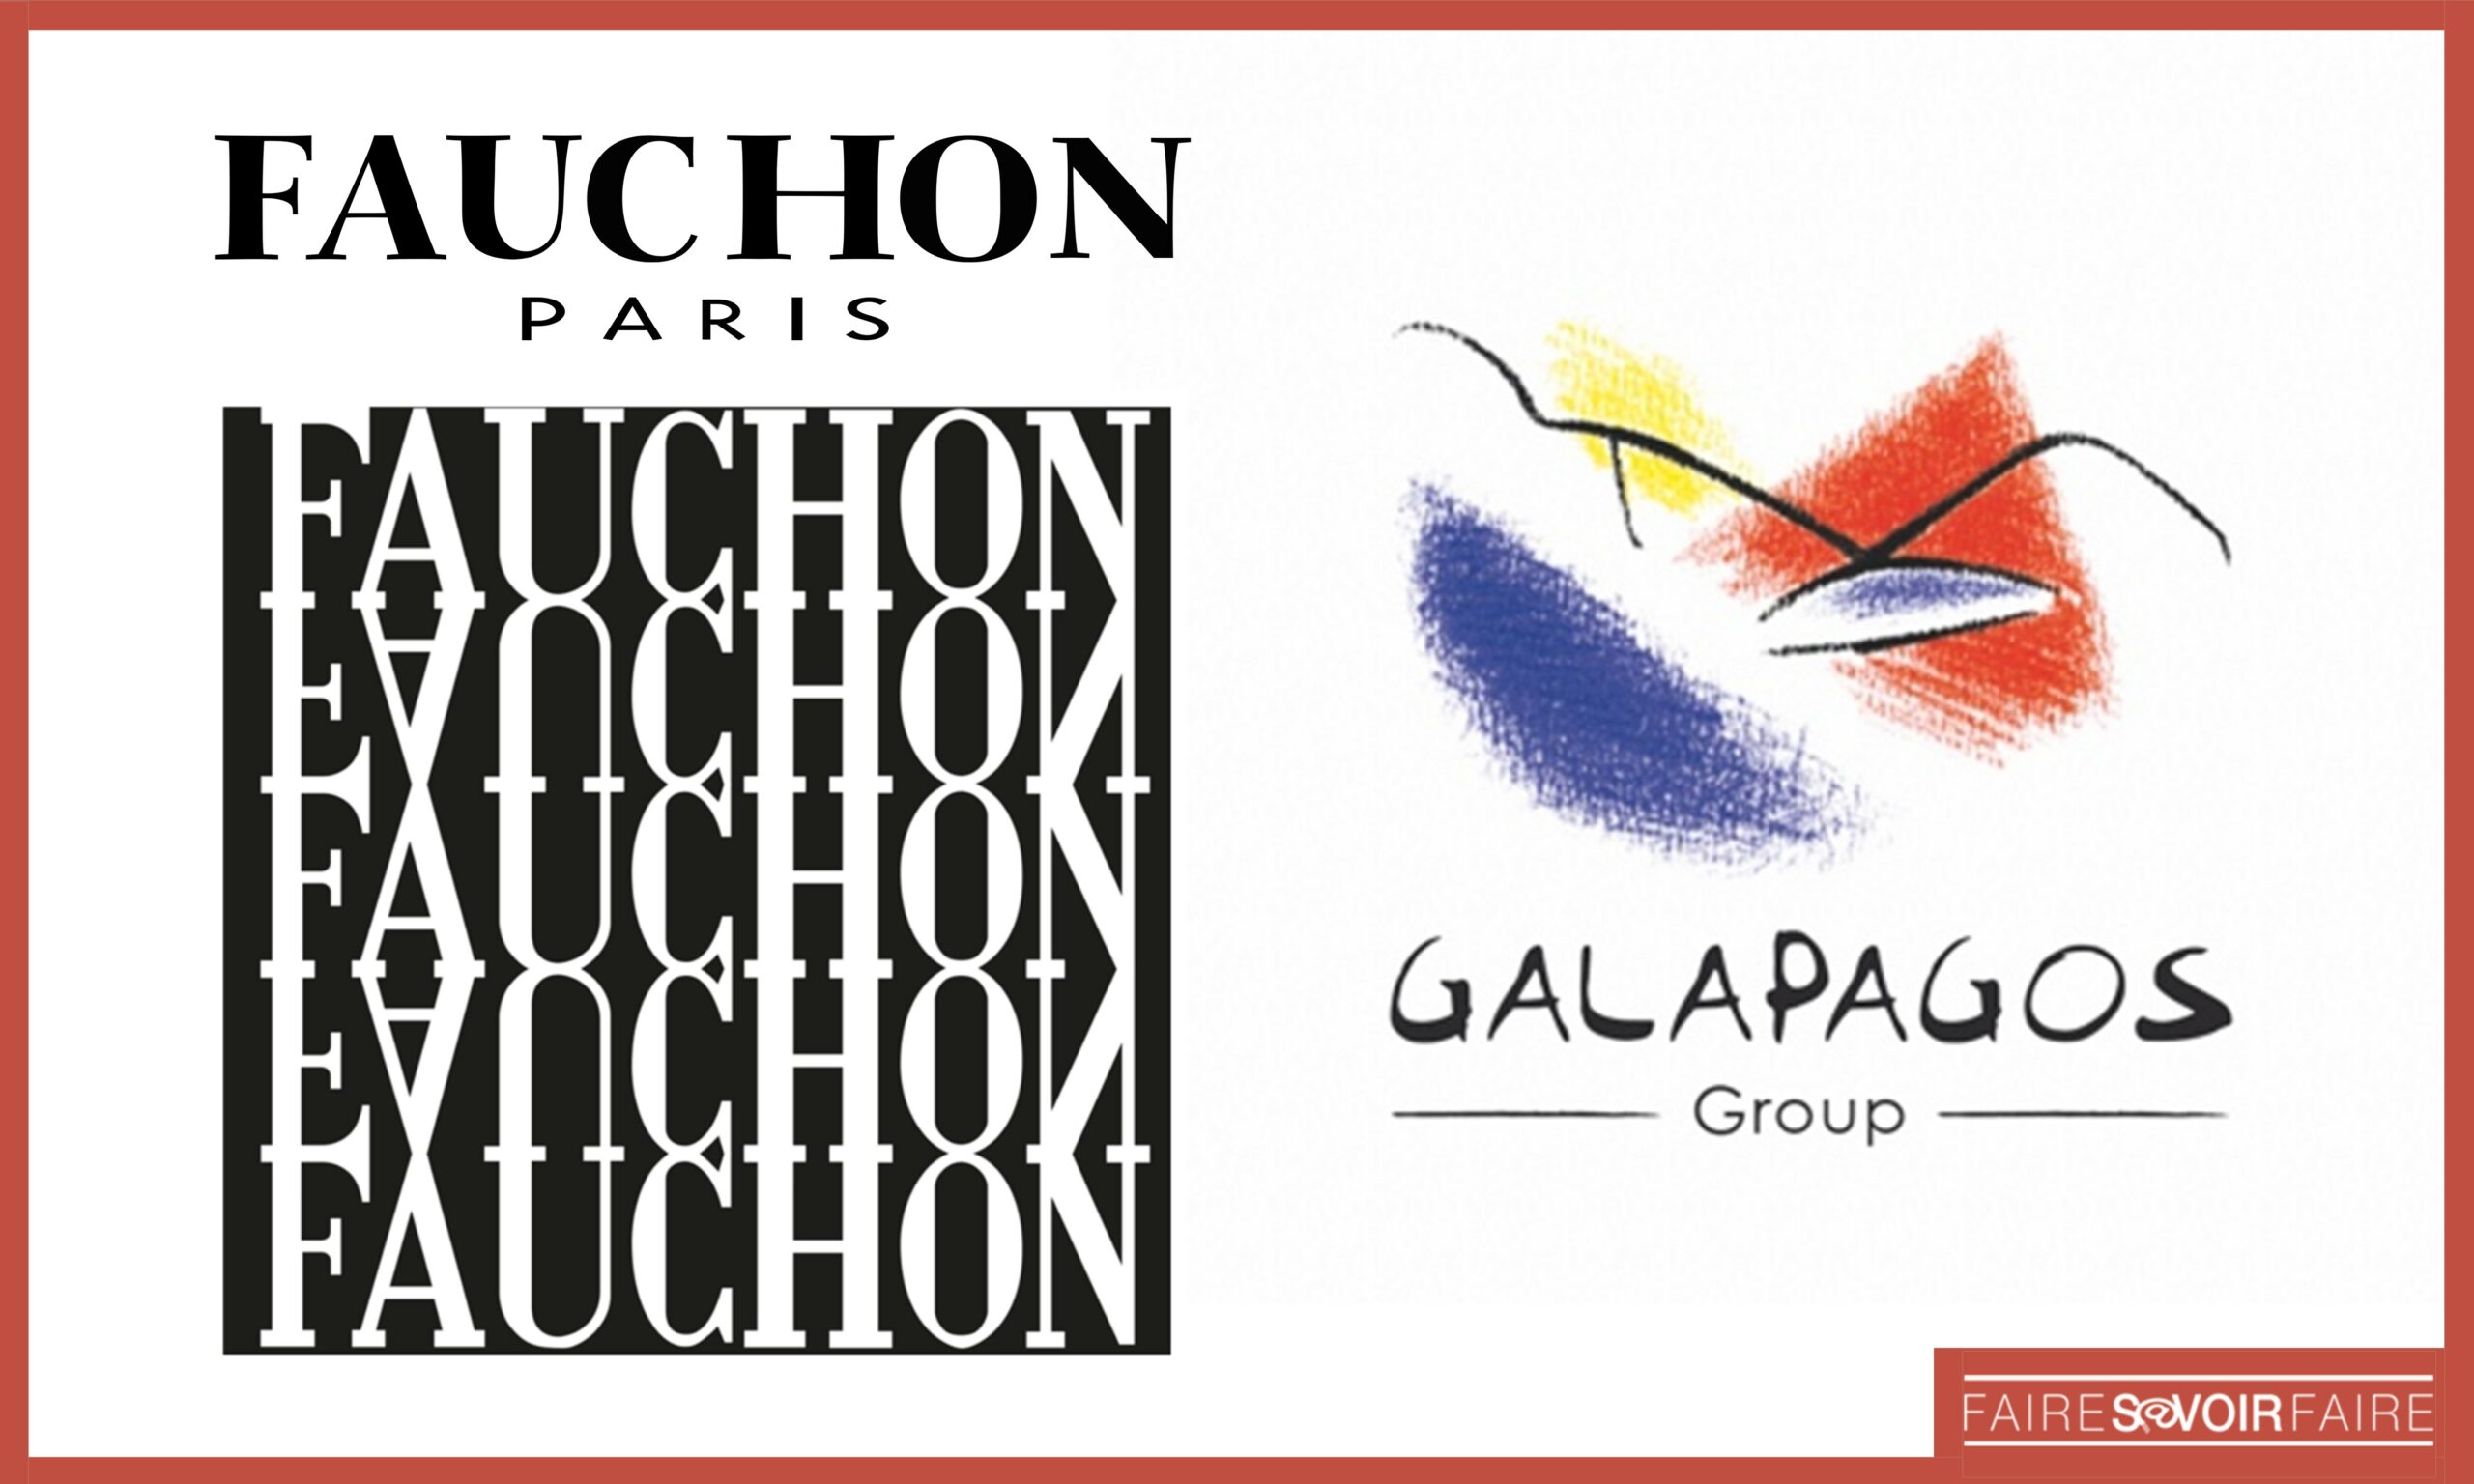 La marque iconique Fauchon reprise par le groupe Galapagos